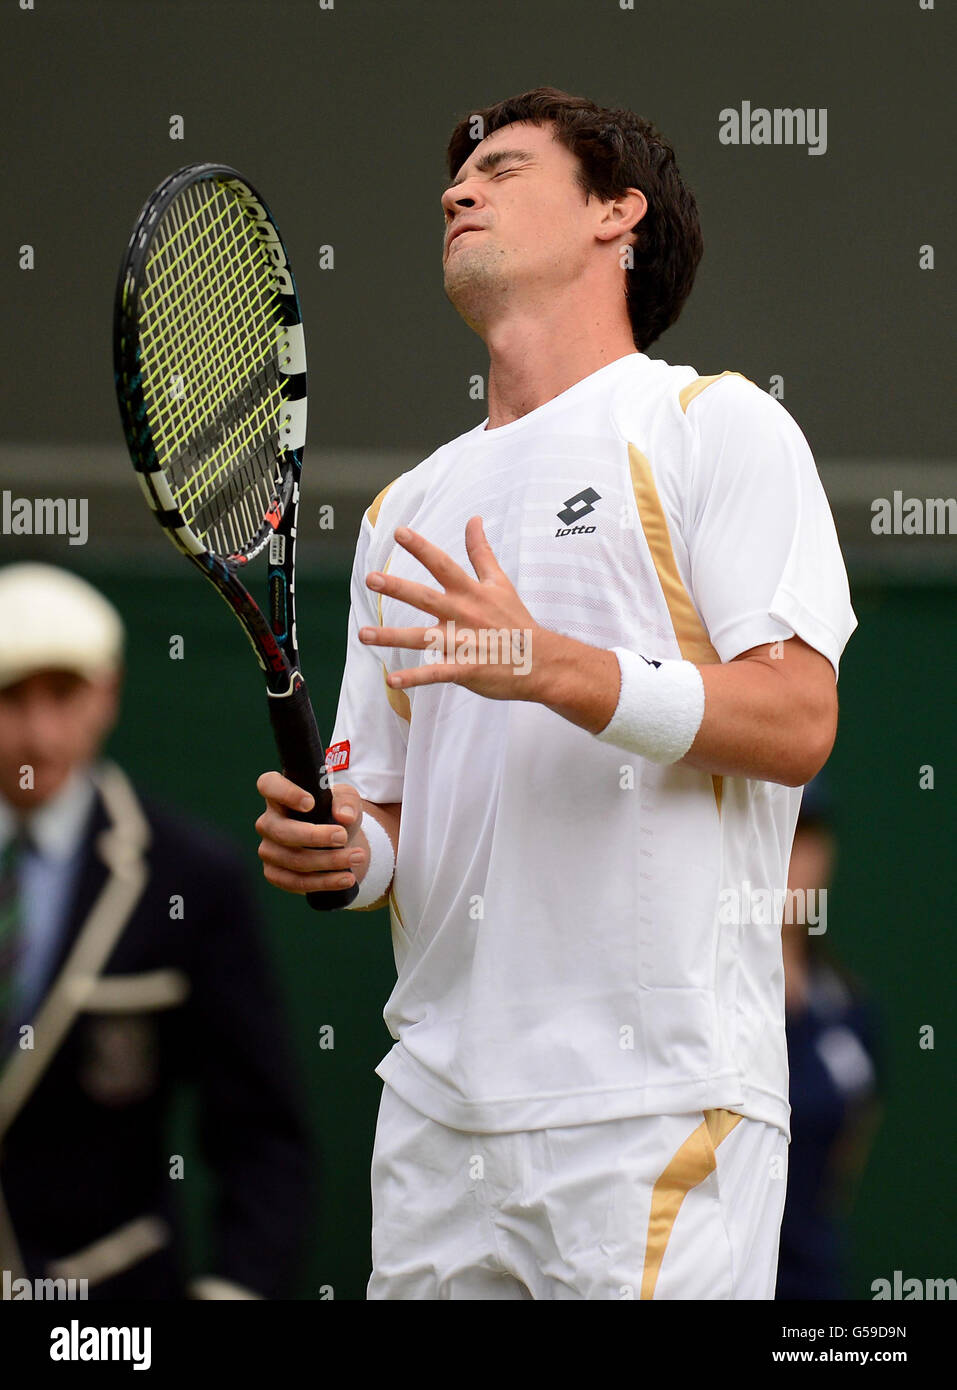 Jamie Baker, en Grande-Bretagne, laisse s'envoler ses frustrations lors de son match contre Andy Roddick, aux États-Unis, le troisième jour des championnats de Wimbledon 2012 au All England Lawn tennis Club, à Wimbledon. Banque D'Images